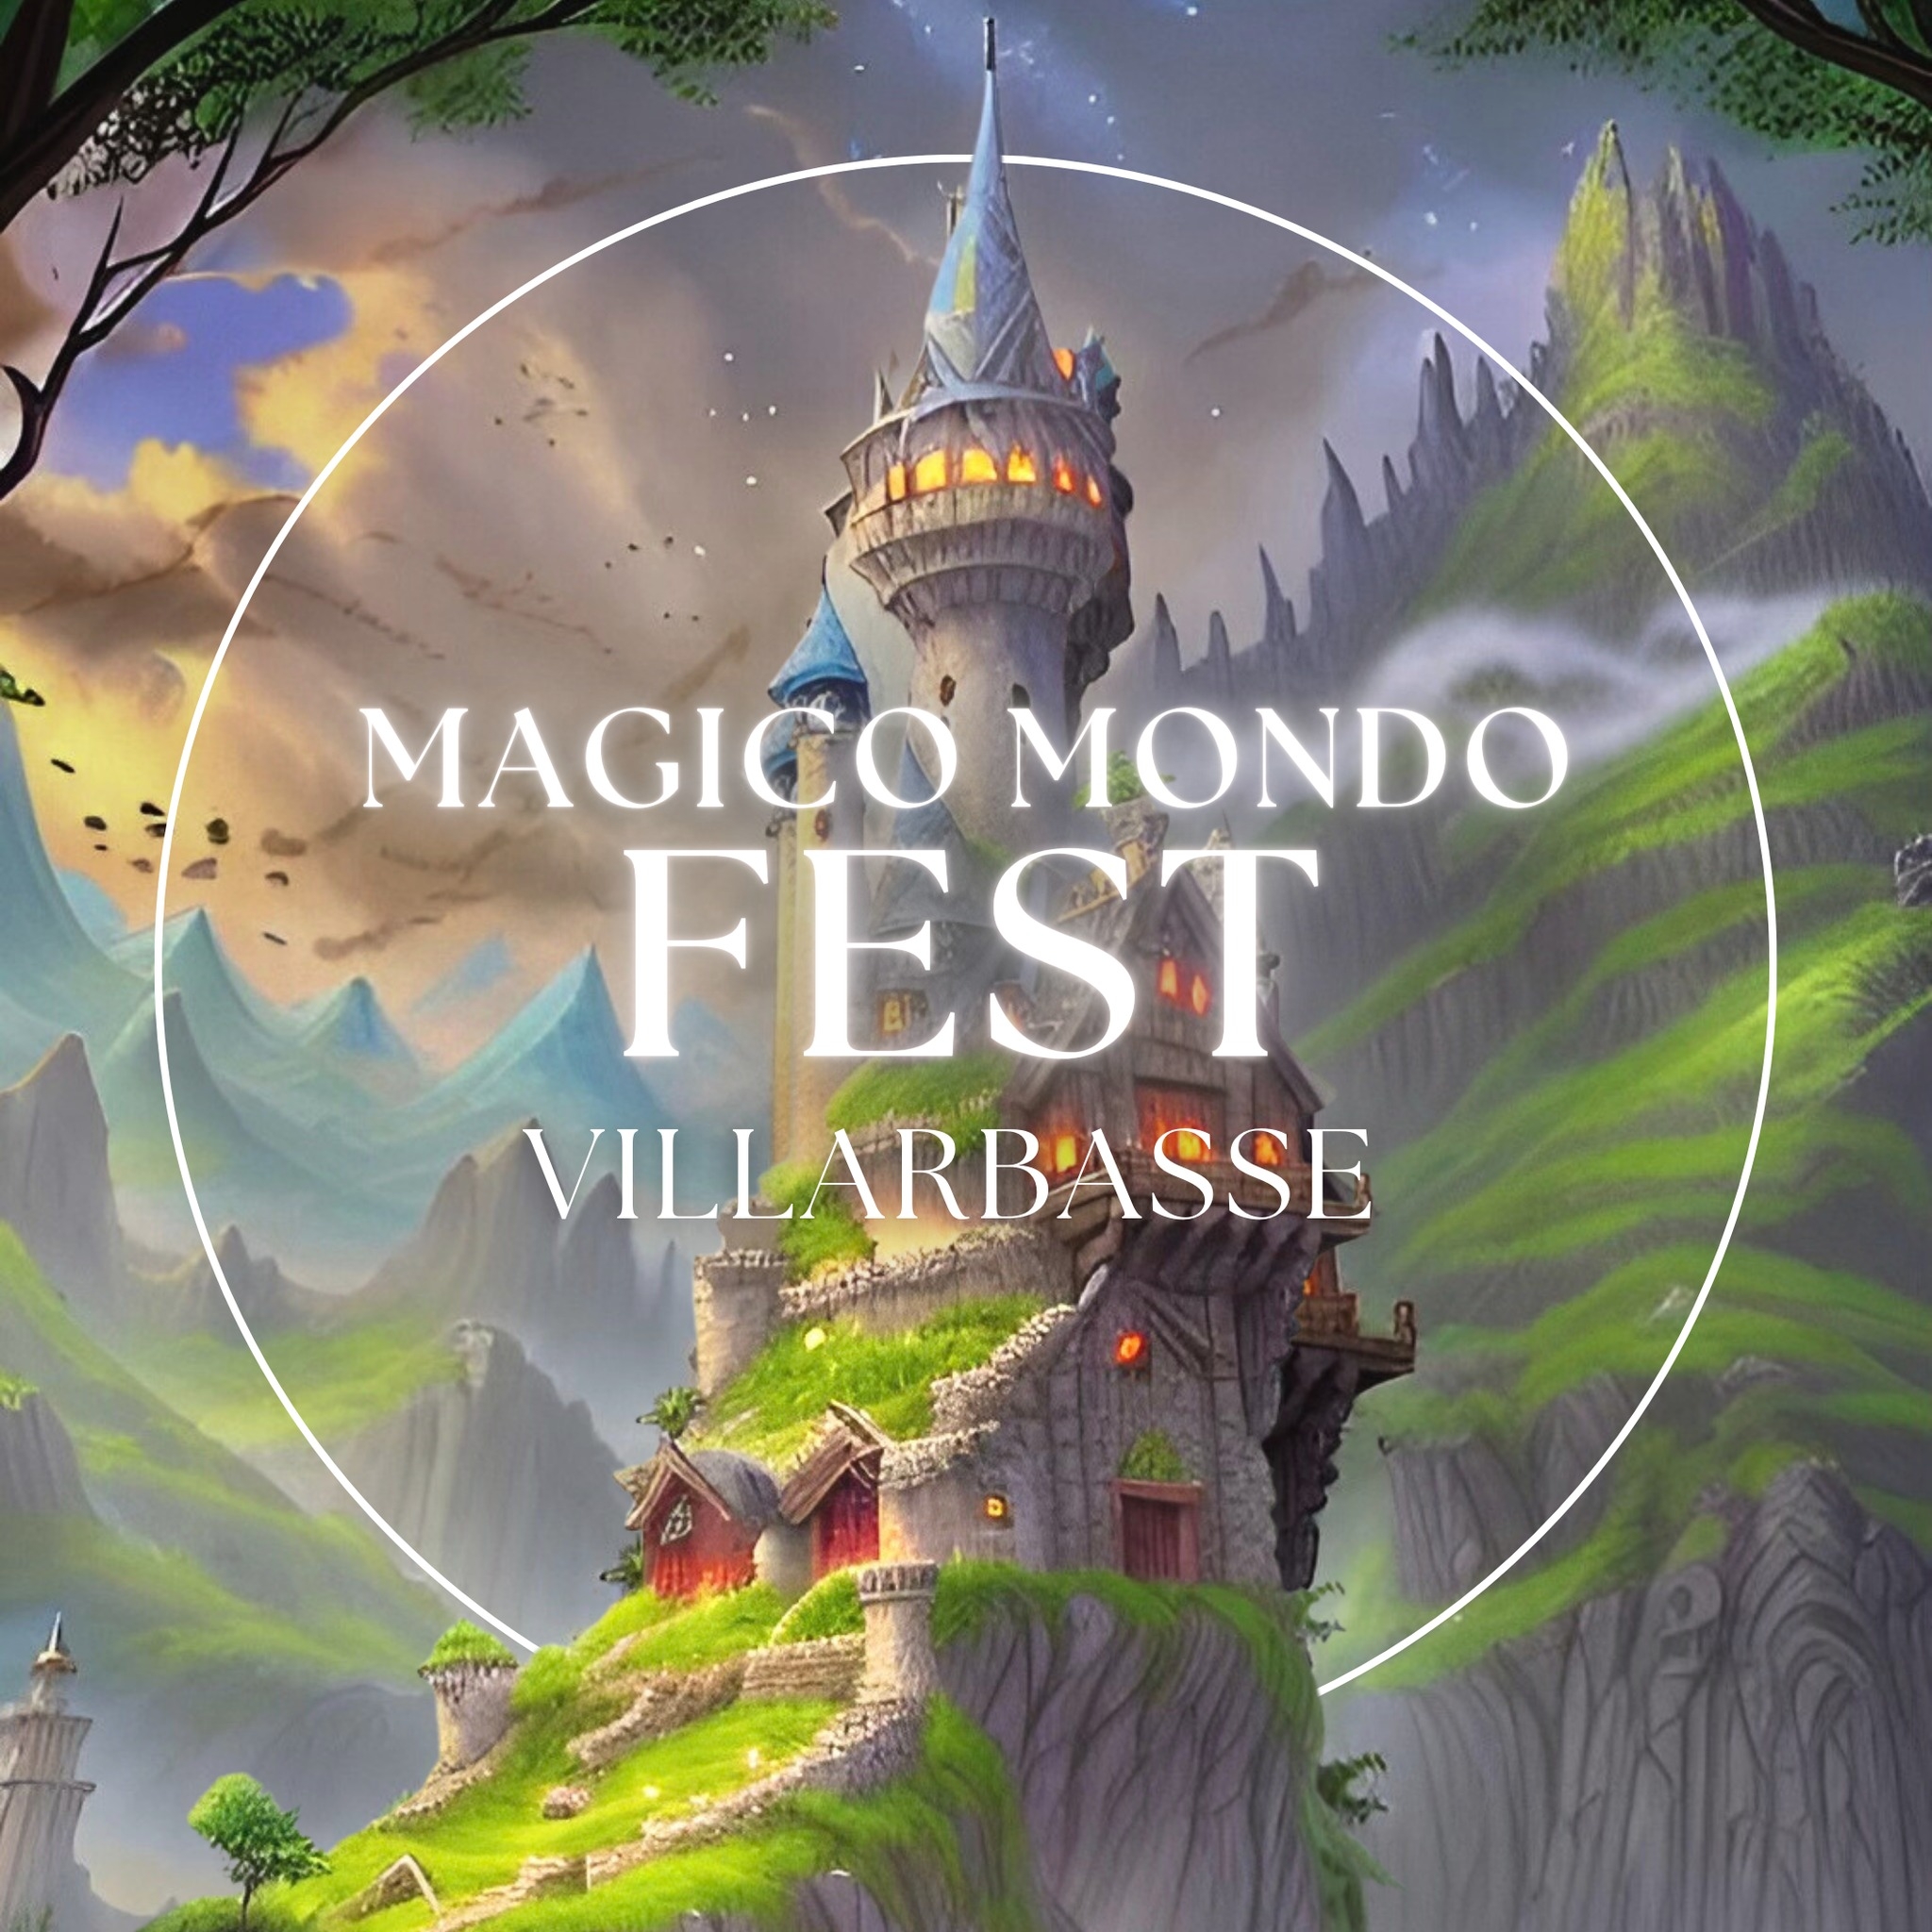 Il Magico Mondo Fest a Villarbasse